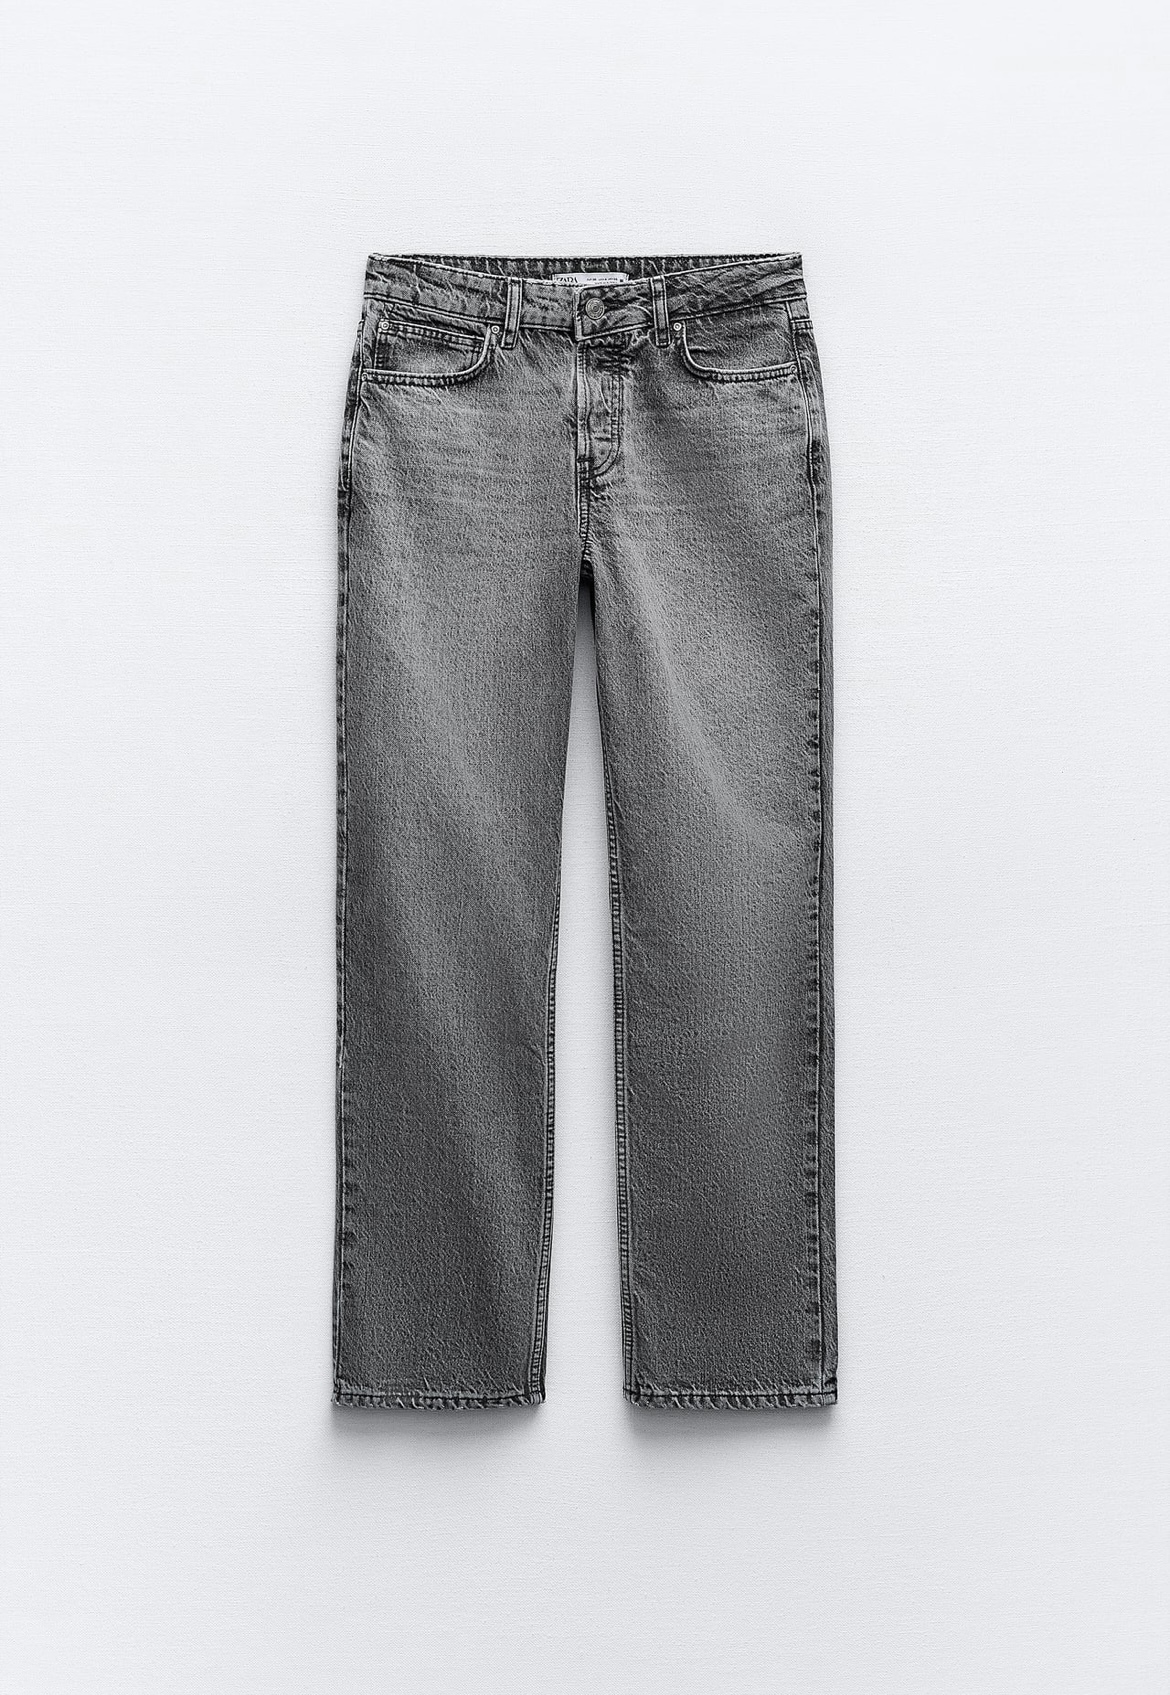 Jeans gris de Zara (25,95 euros).